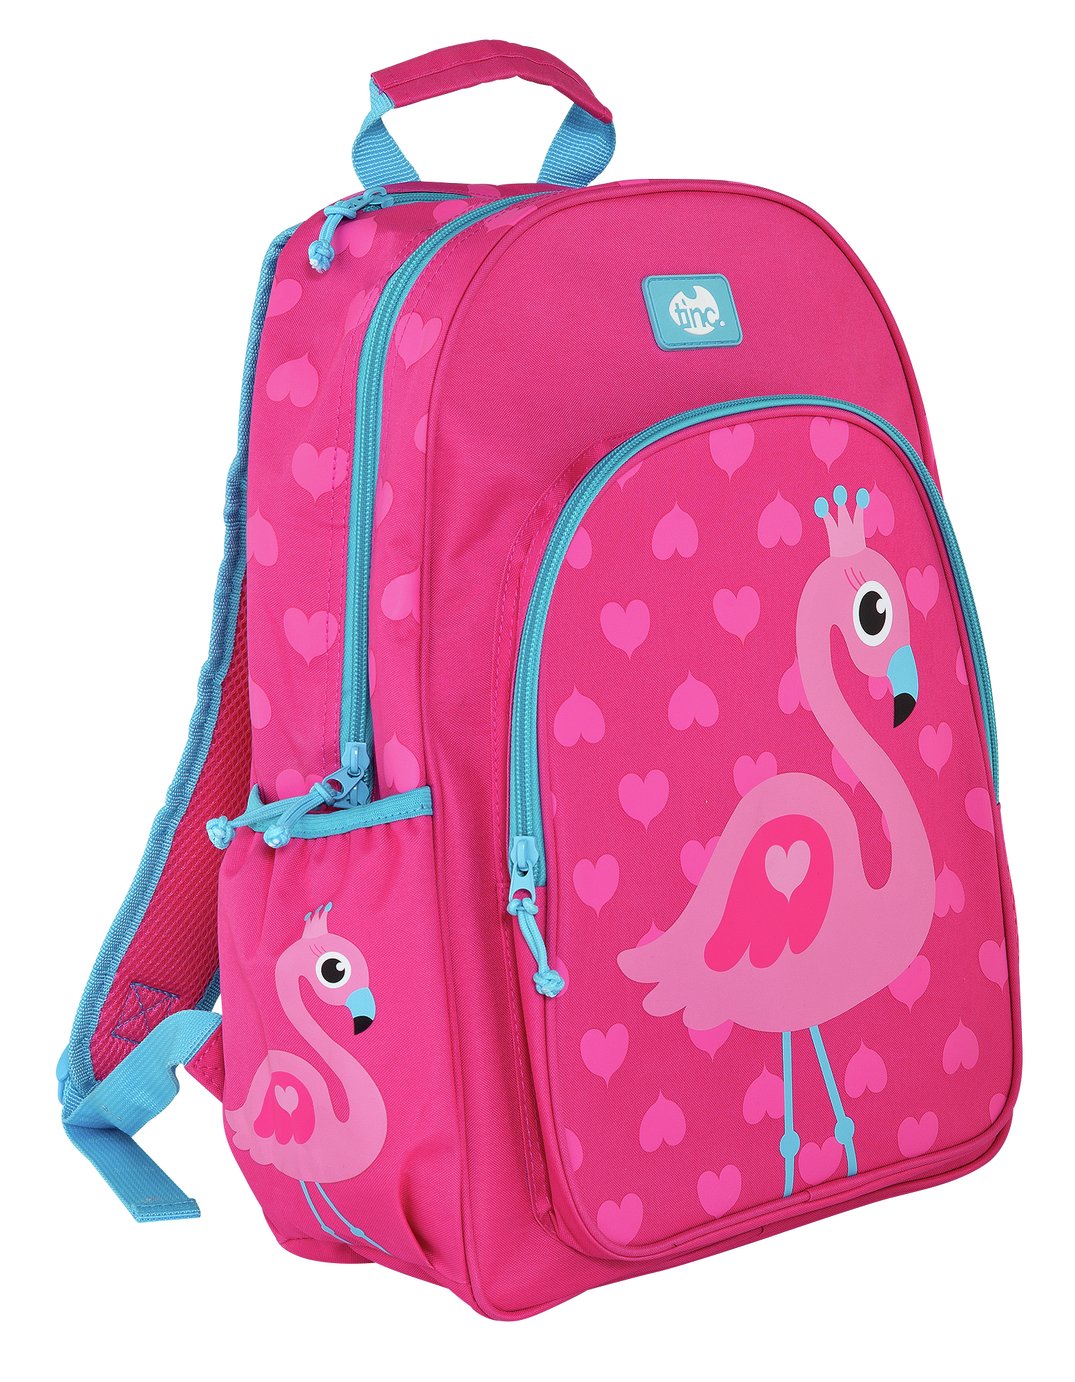 Tinc Flamingo 16.5L Backpack